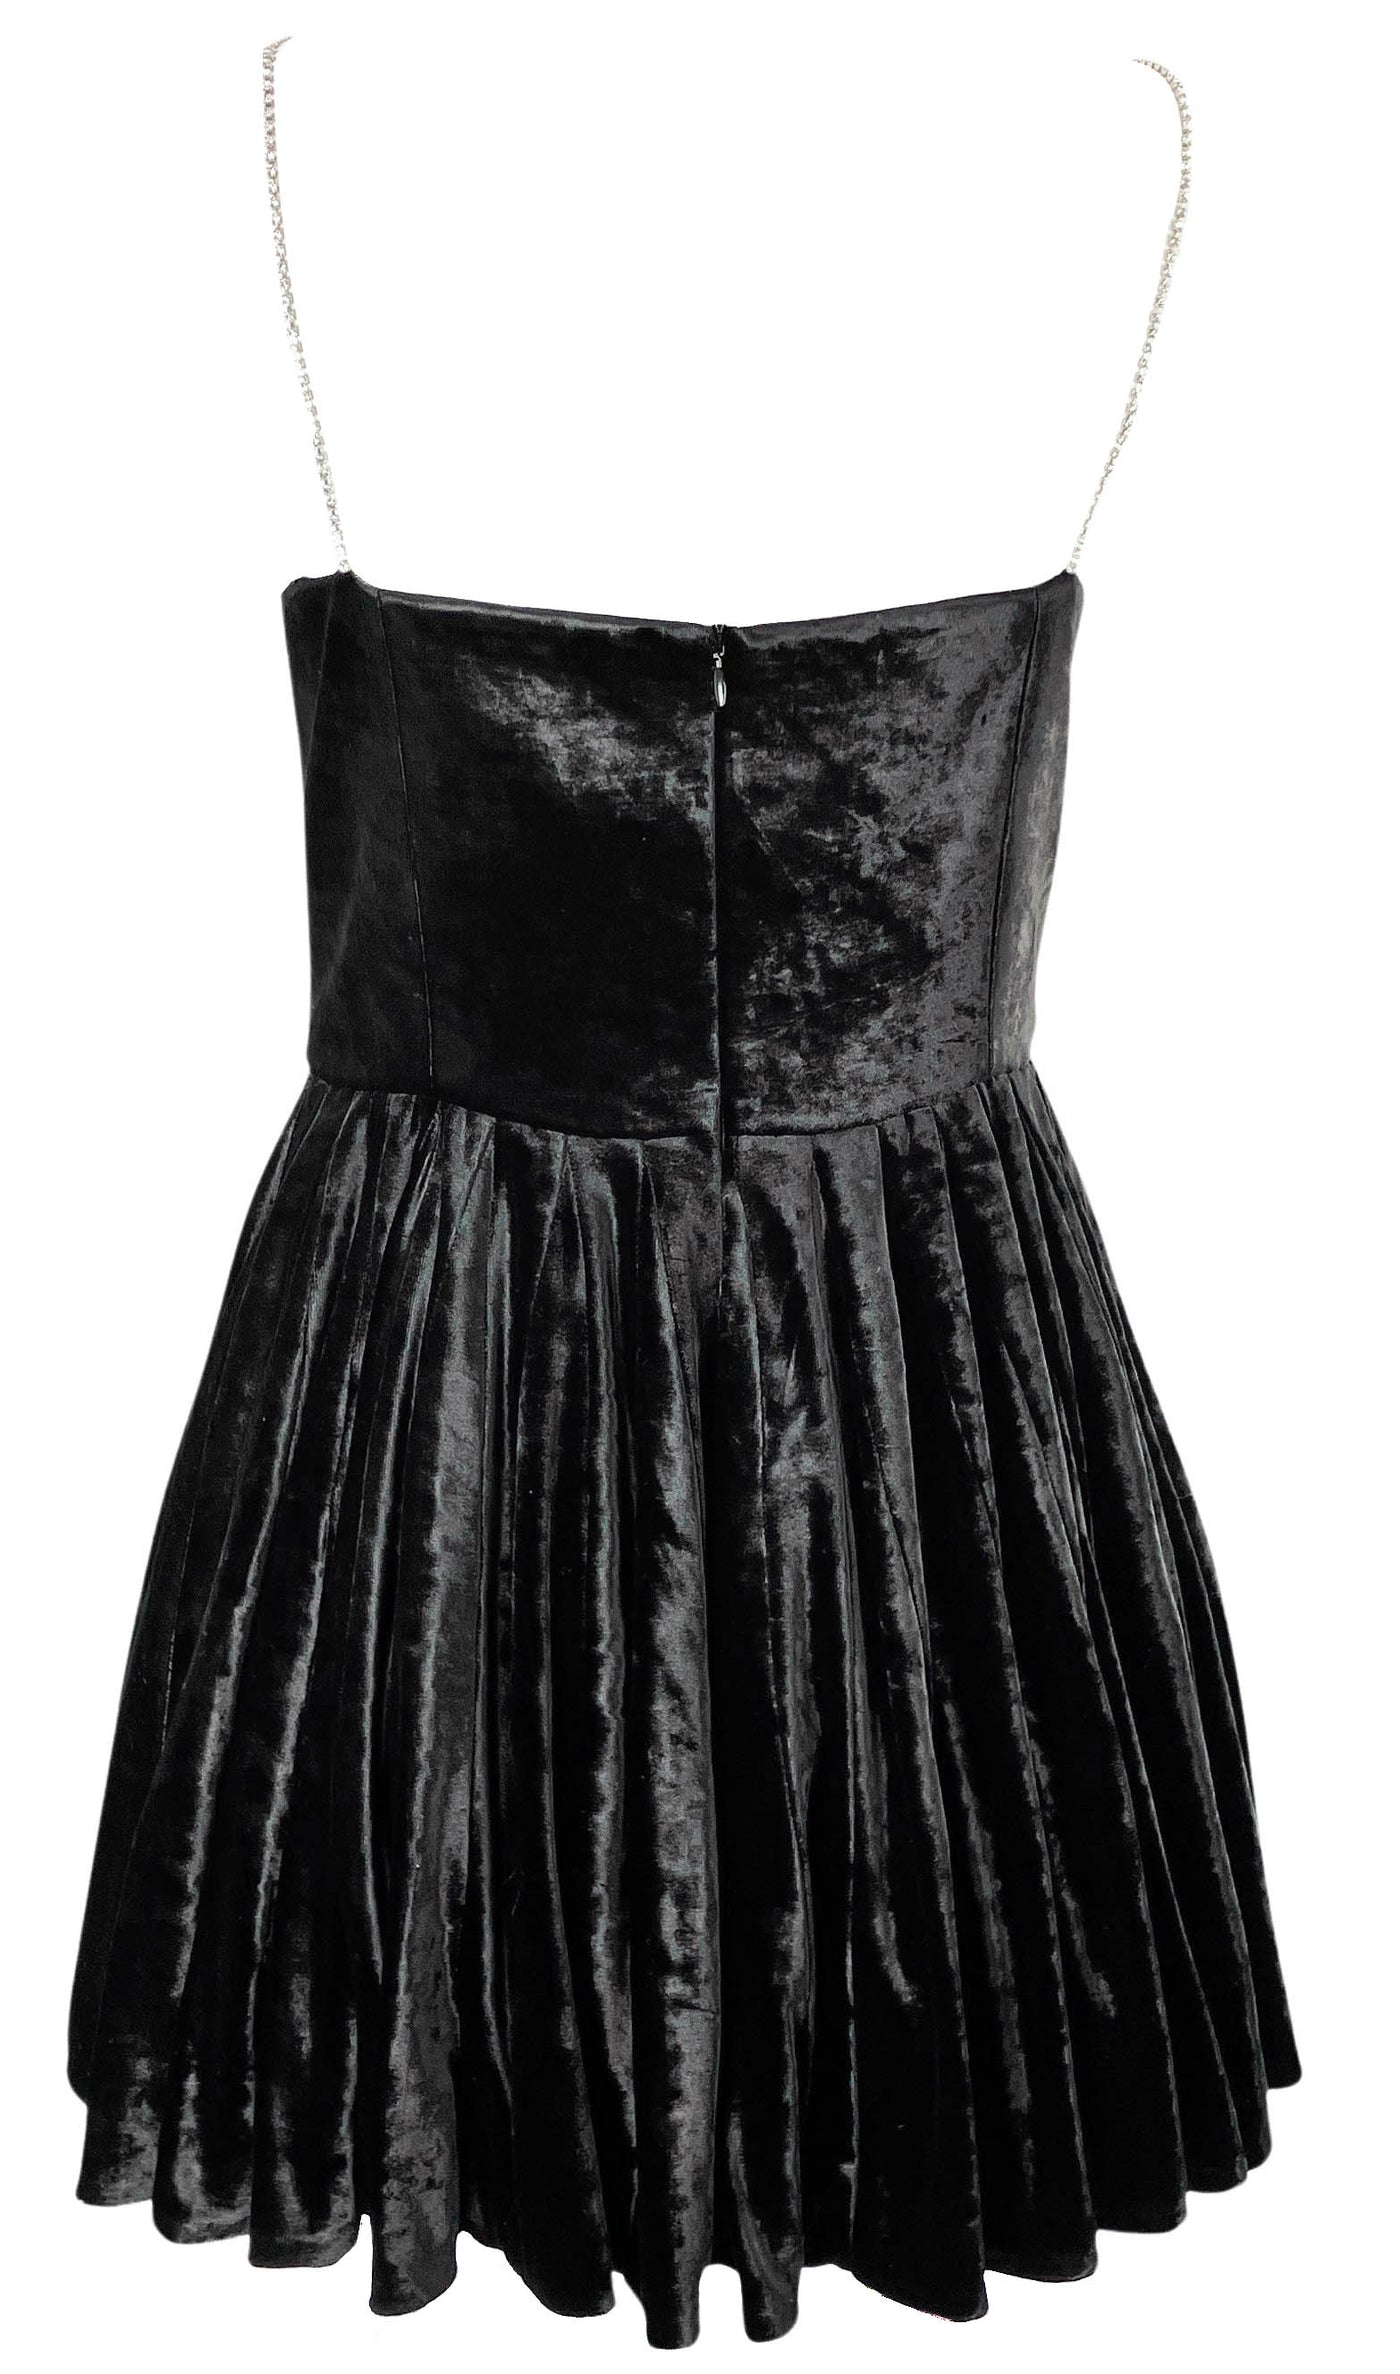 Magda Butrym Crystal-Embellished Velvet Mini Dress in Black - Discounts on Magda Butrym at UAL